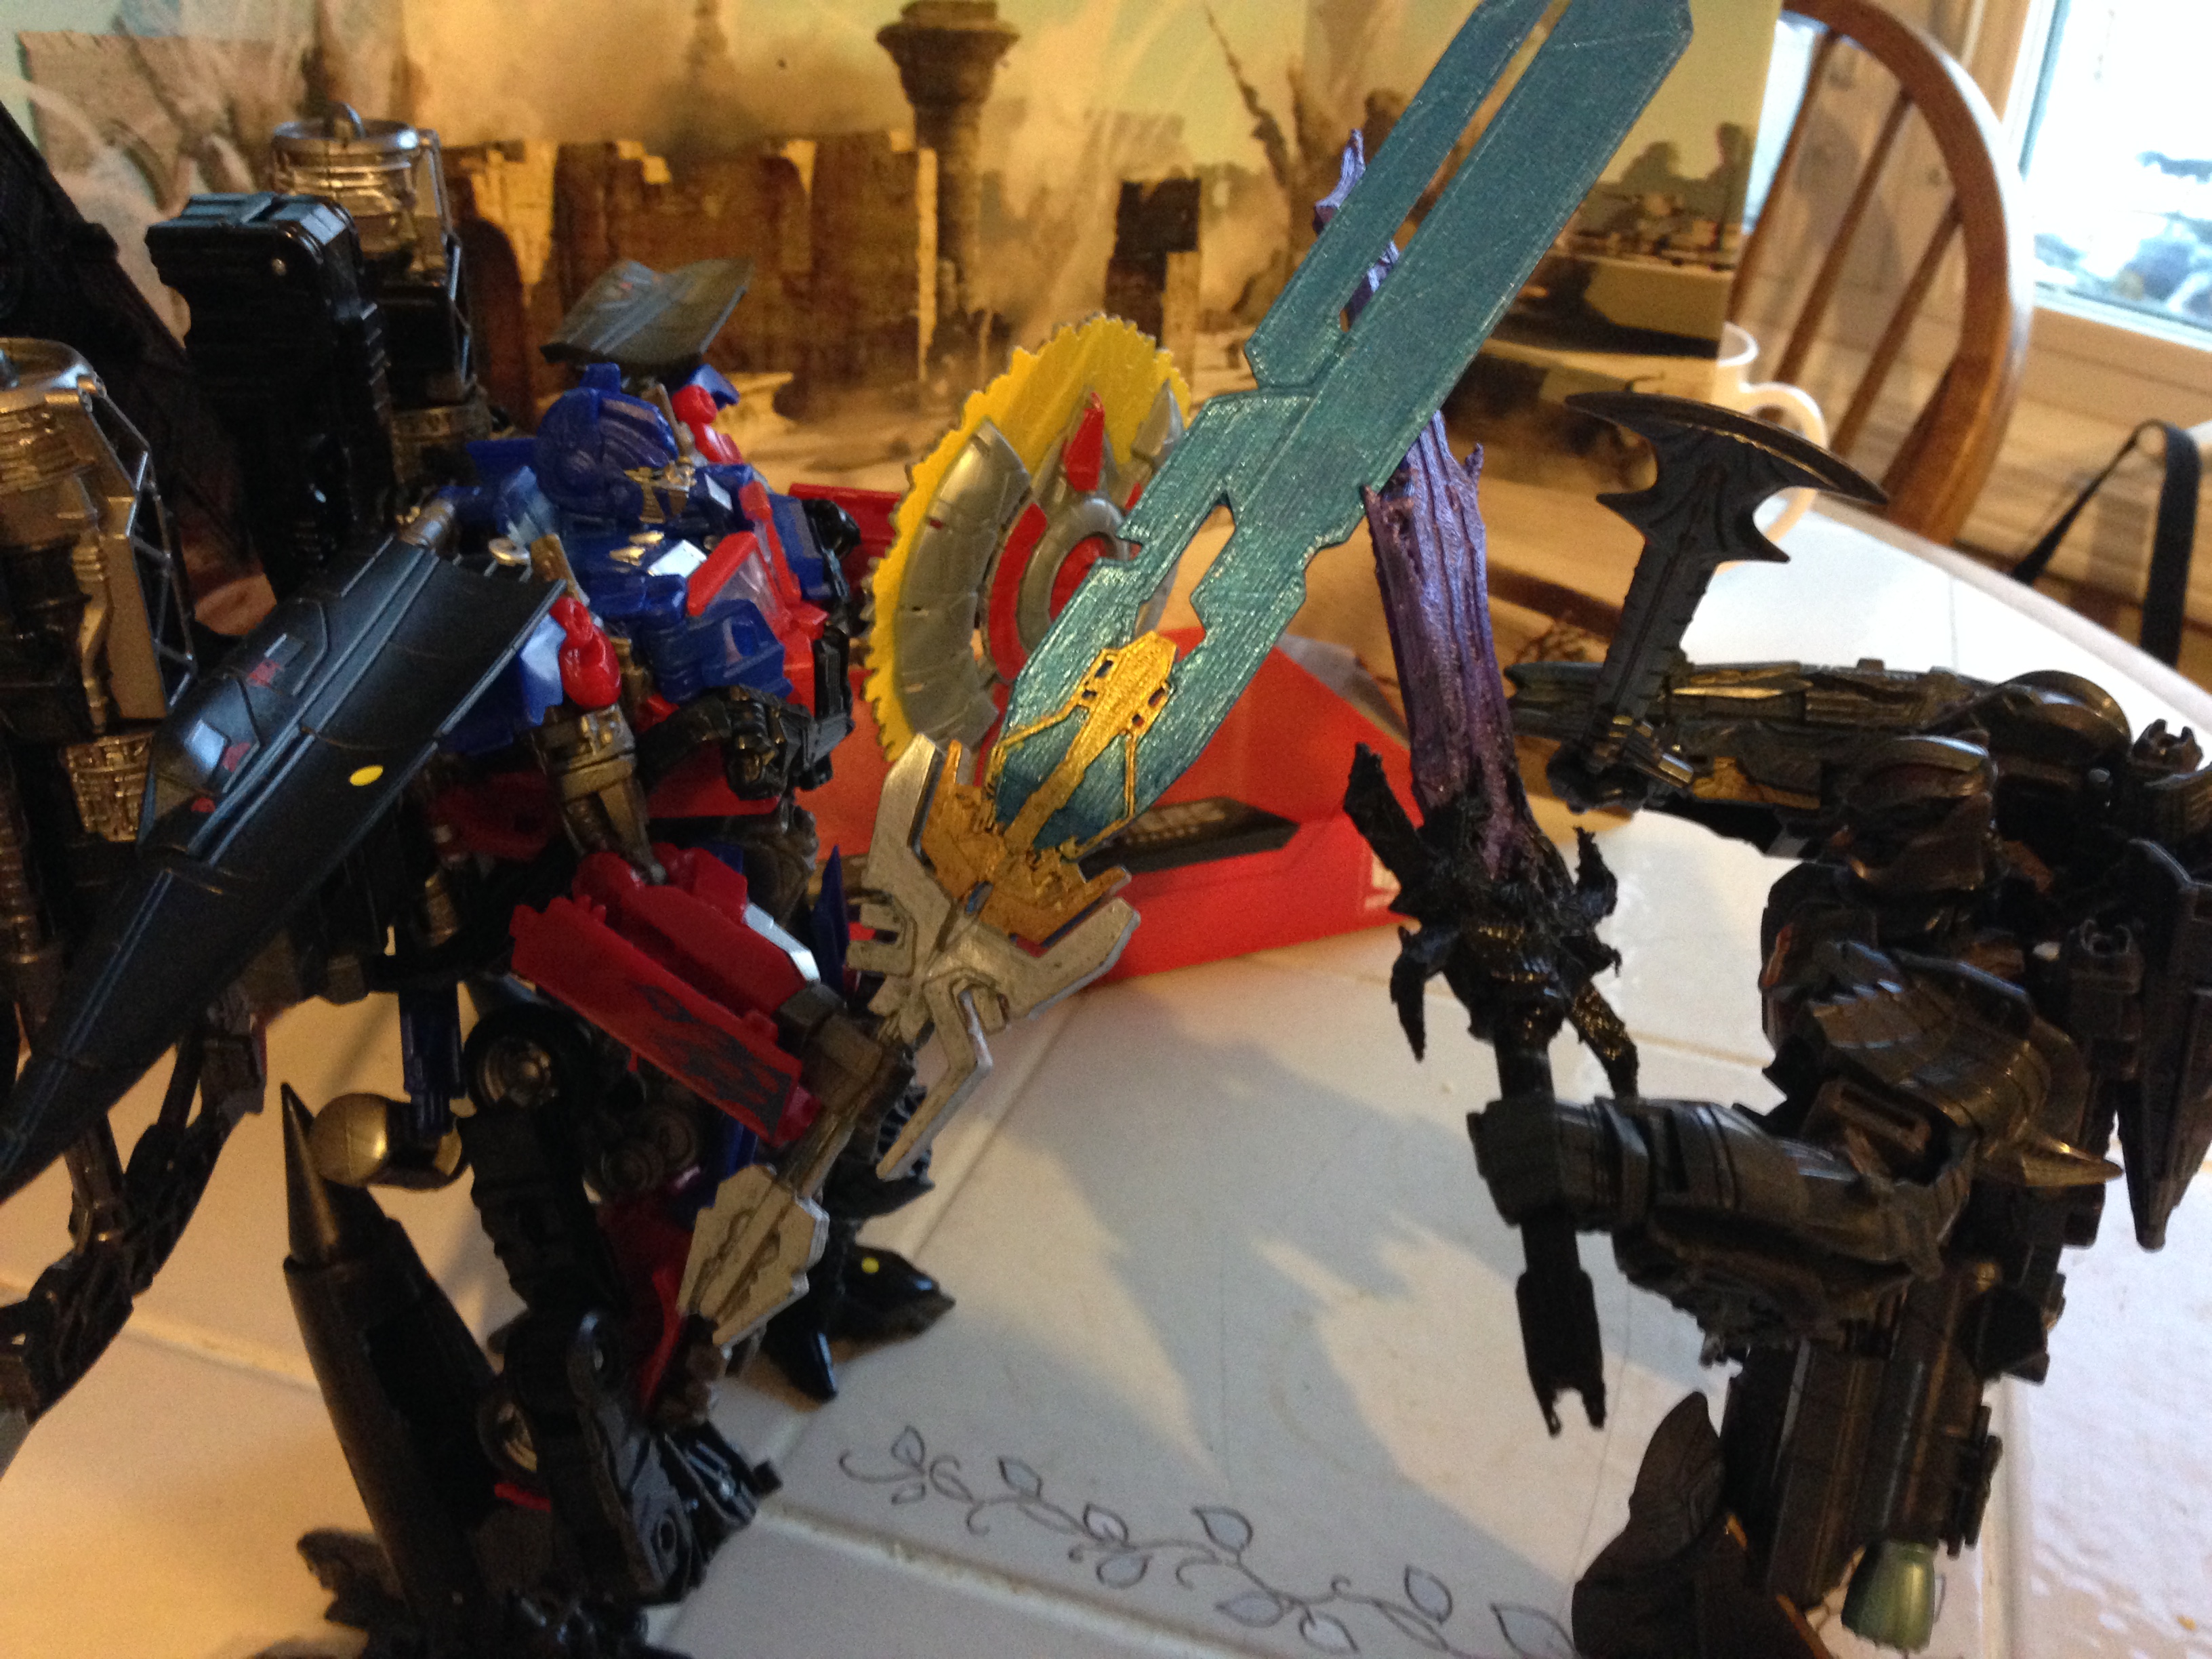 Saber Fight: Optimus Prime vs. Megatron